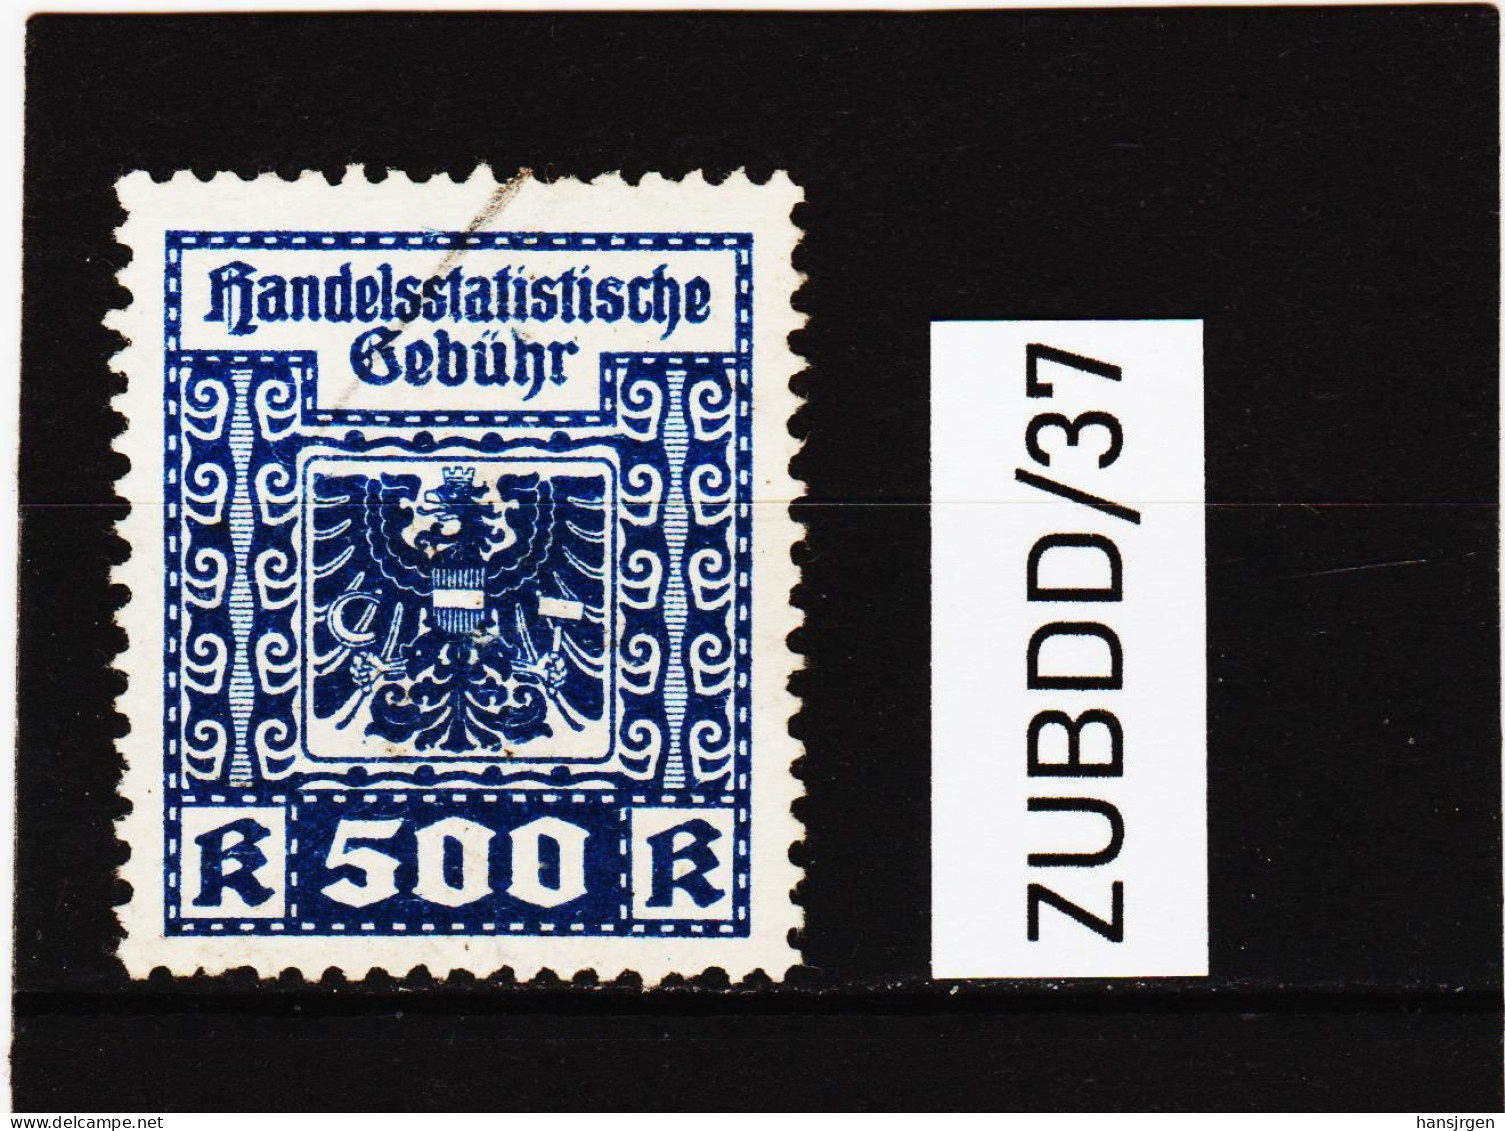 ZUBDD/37 STEMPELMARKEN FISKALMARKEN ÖSTERREICH HANDELSSTATISTISCHE GEBÜHR 500 KRONEN Gestempelt SIEHE ABBILDUNG - Revenue Stamps